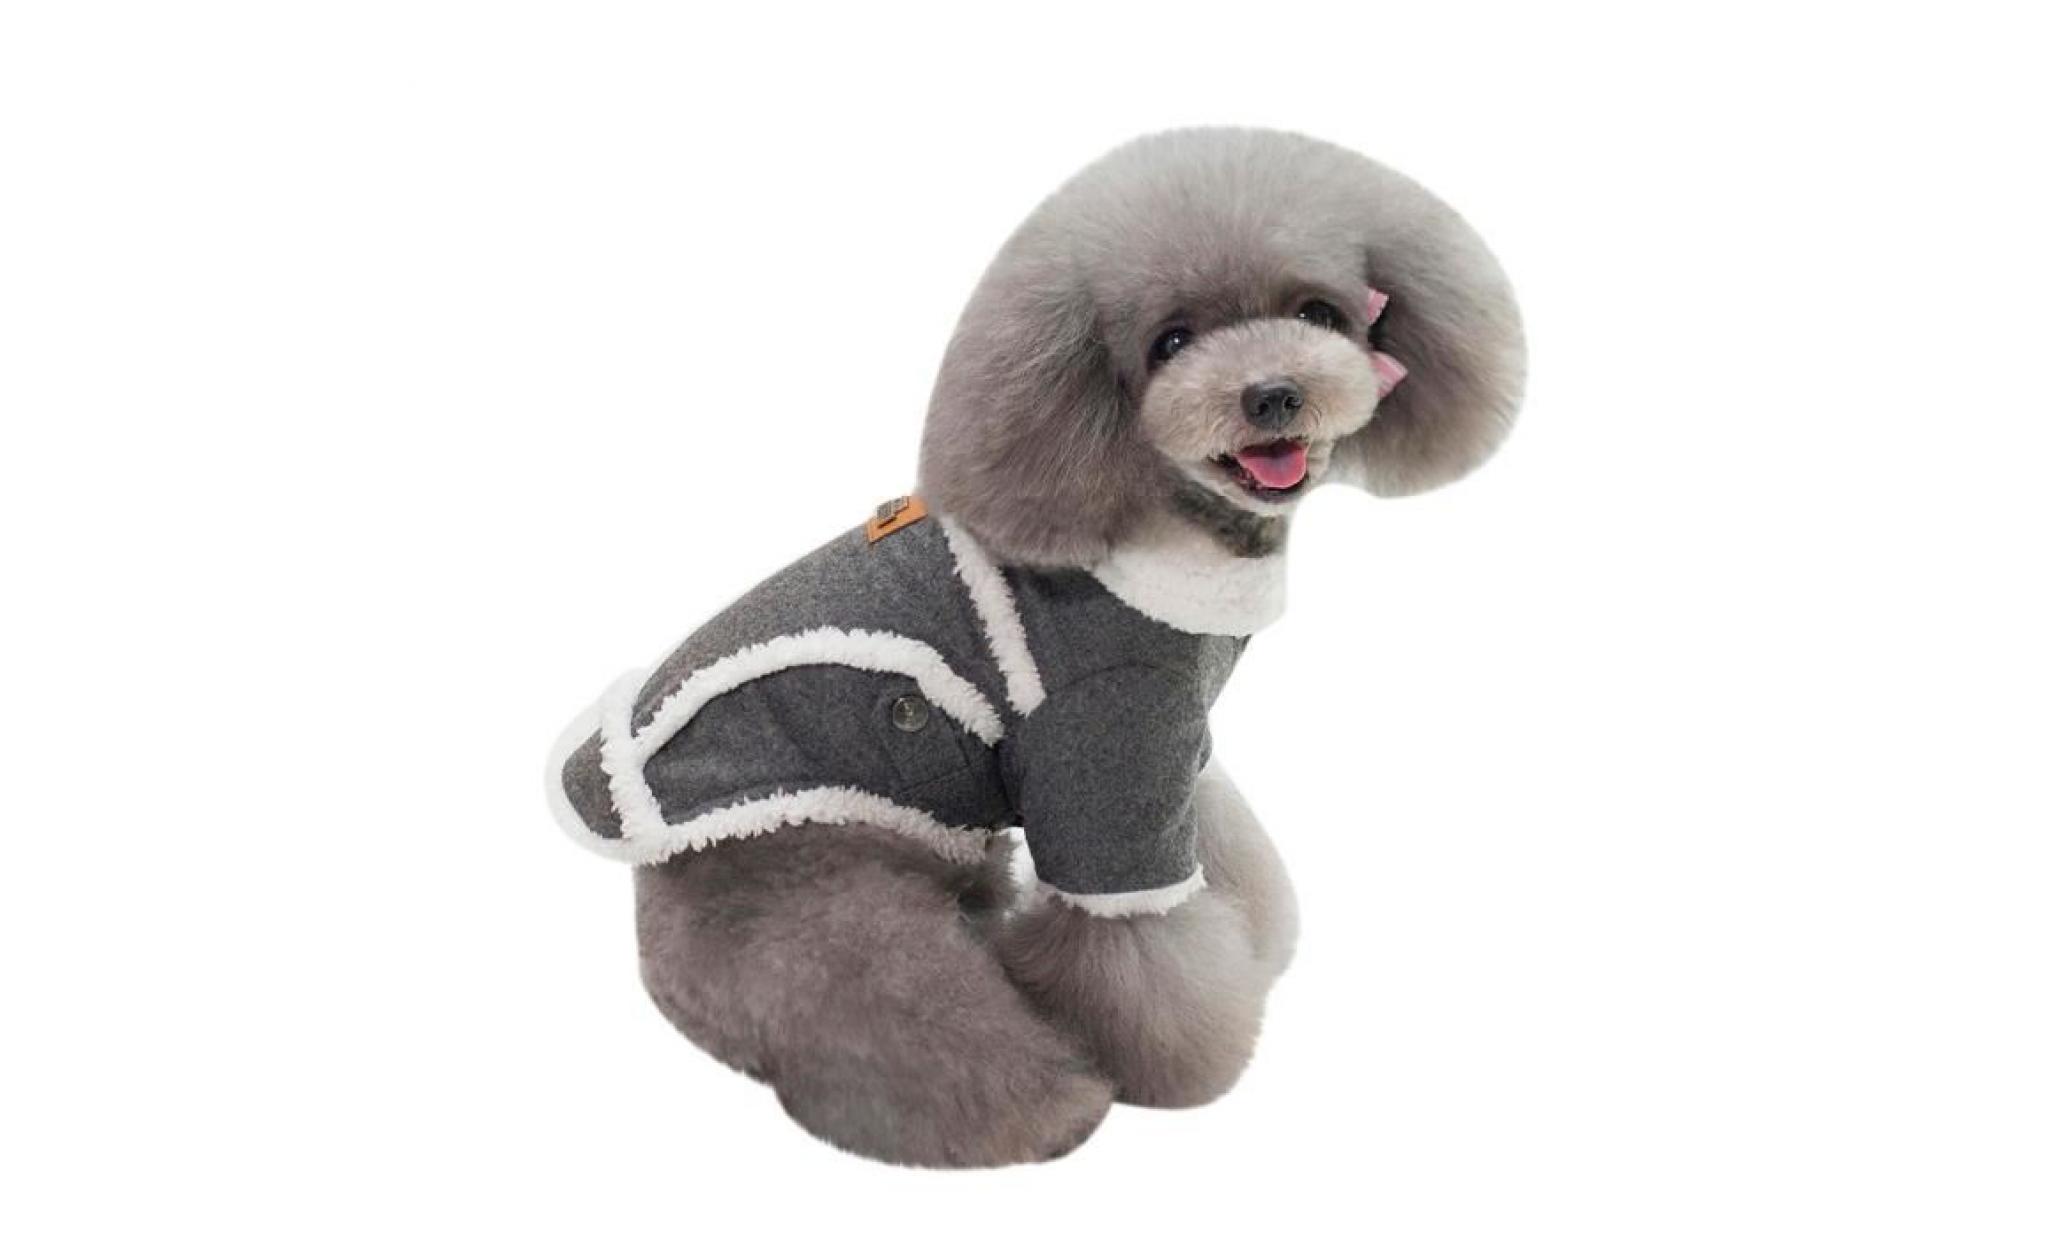 noir code m gris dogbaby nouveaux vêtements pour chiens animaux d'hiver usine spot directs modèles d'explosion du commerce pas cher